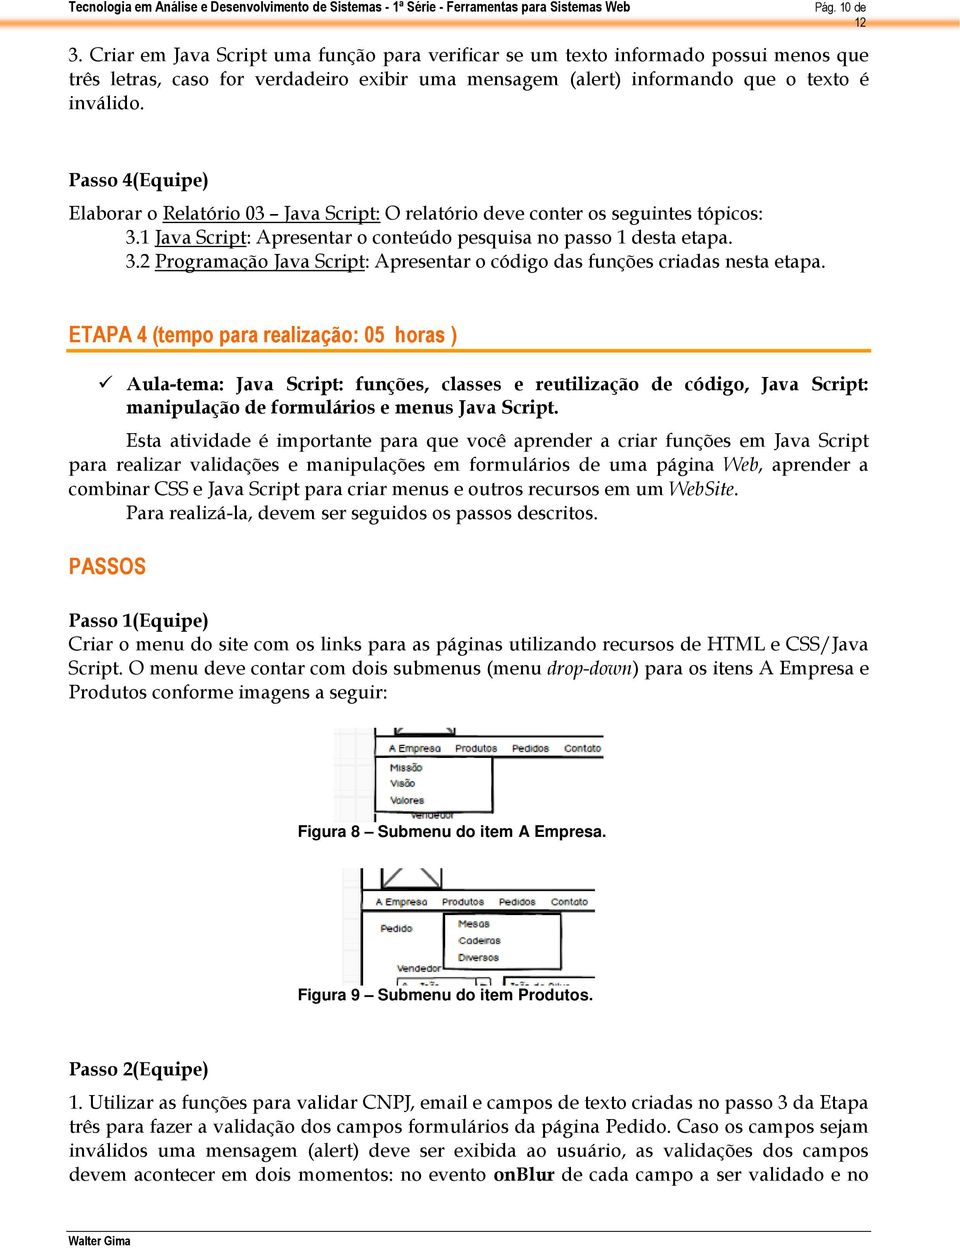 ETAPA 4 (tempo para realização: 05 horas ) Aula-tema: Java Script: funções, classes e reutilização de código, Java Script: manipulação de formulários e menus Java Script.